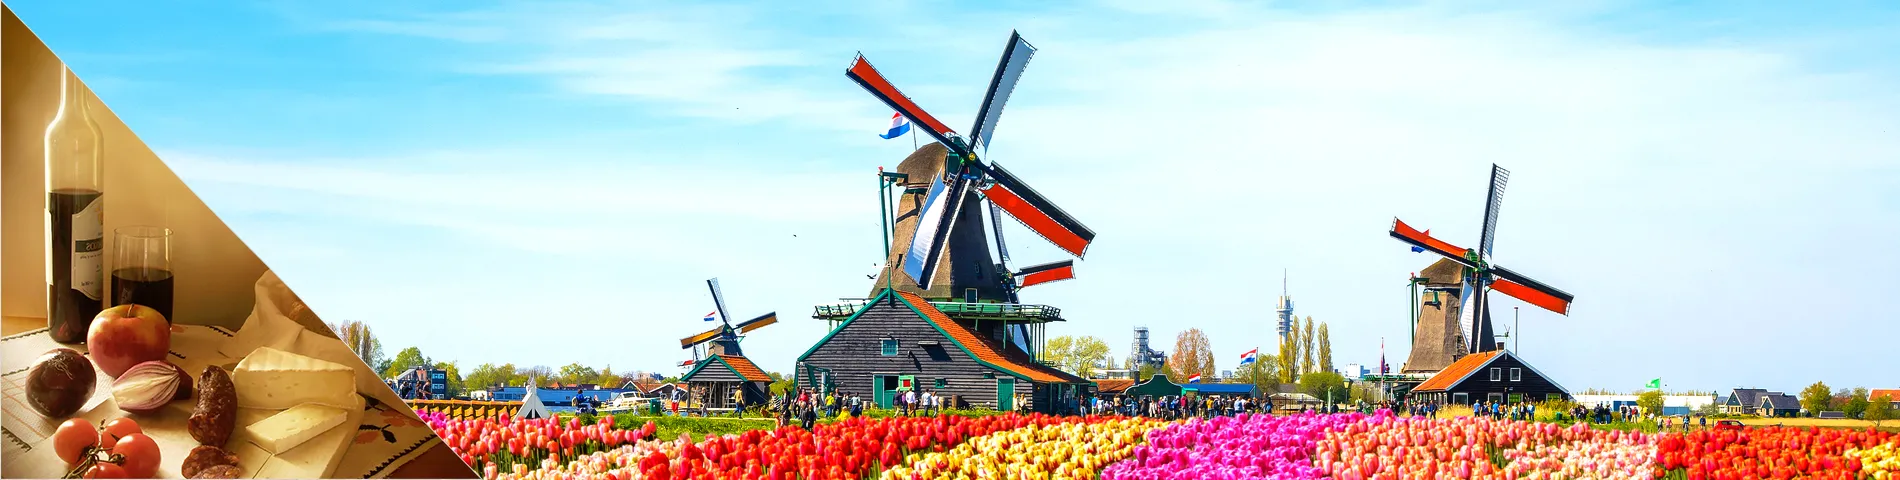 네덜란드 - 네덜란드어 와 문화